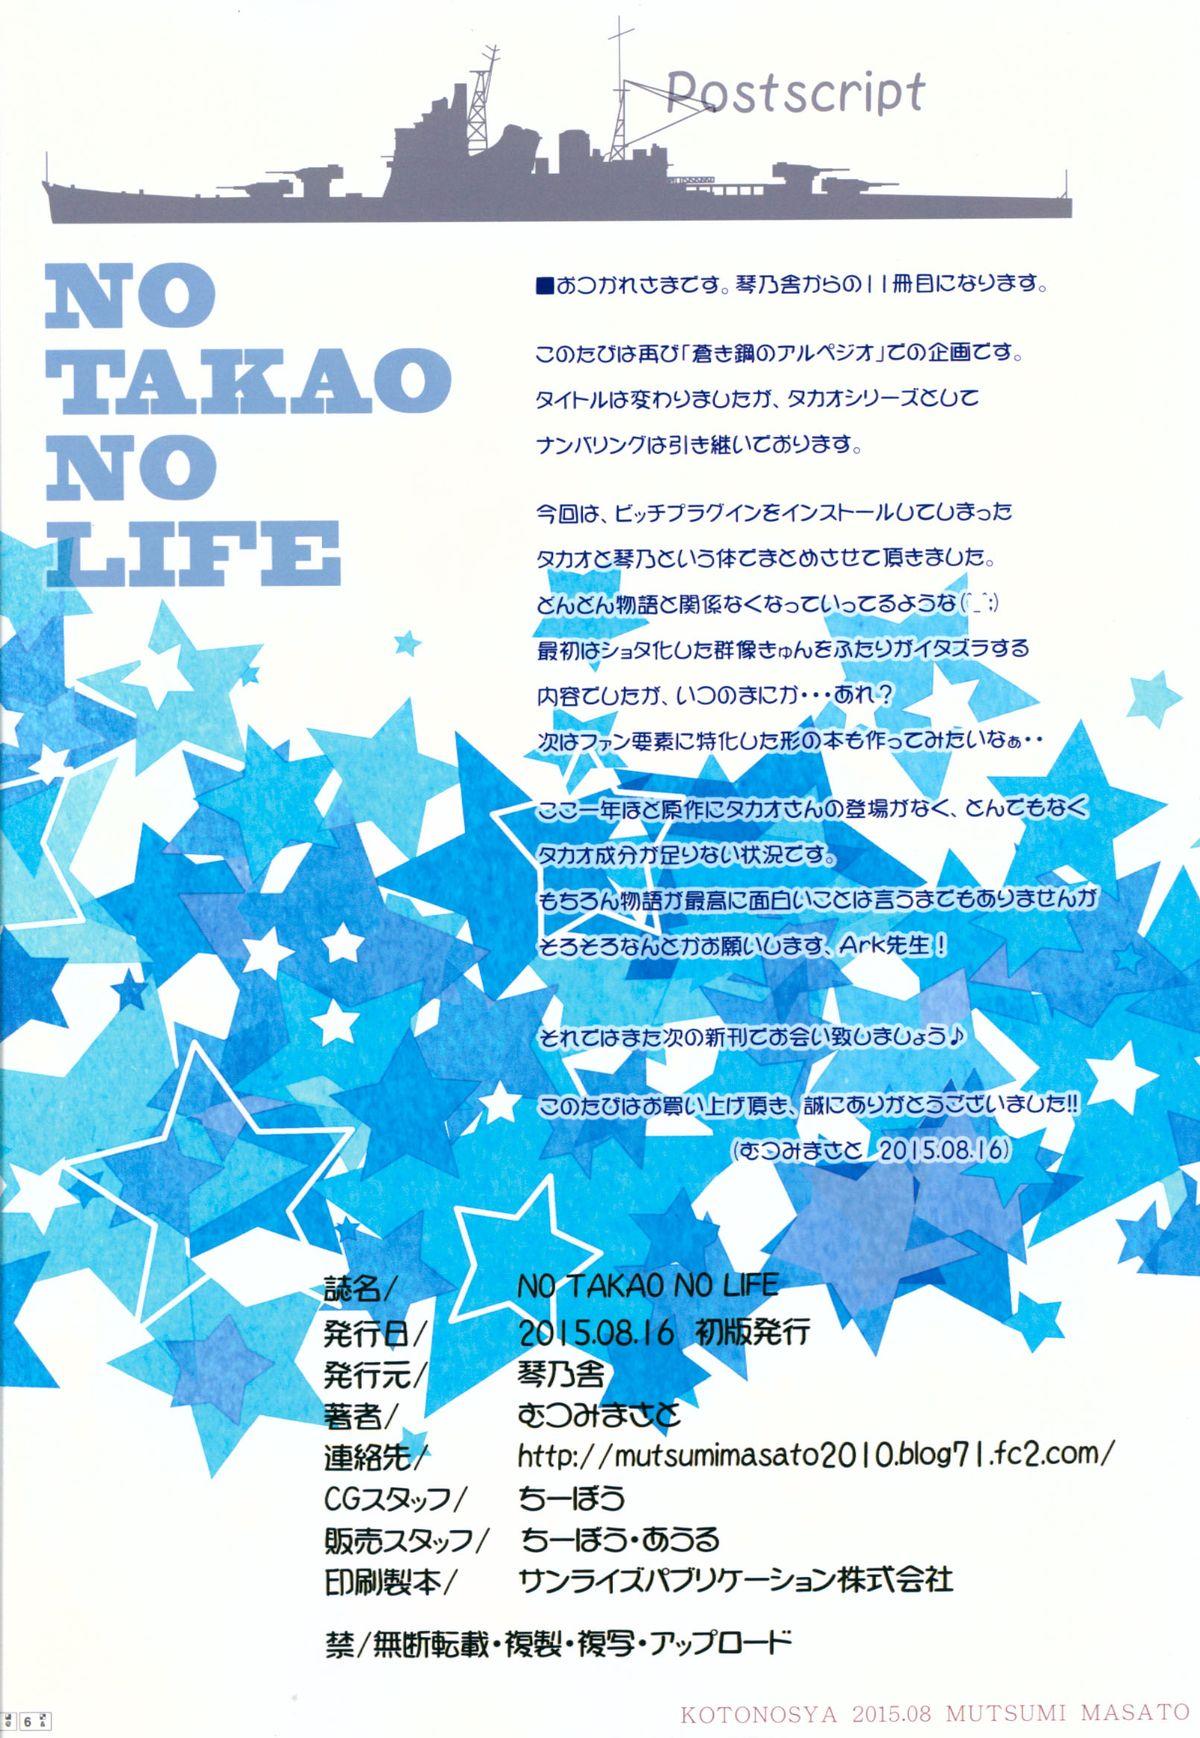 NO TAKAO NO LIFE 24